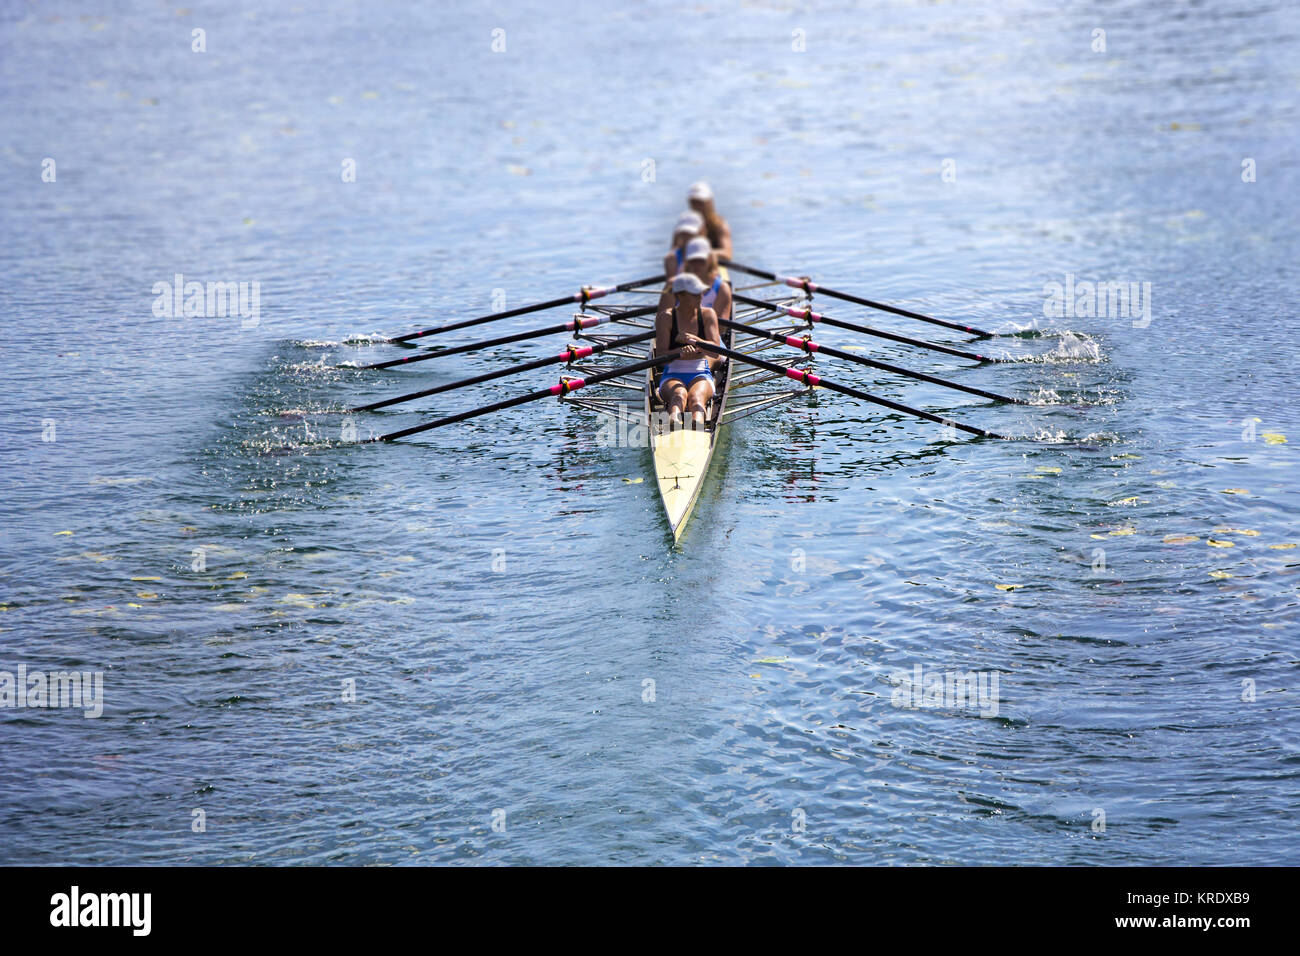 Team di canottaggio quattro-oar donne in barca Foto Stock